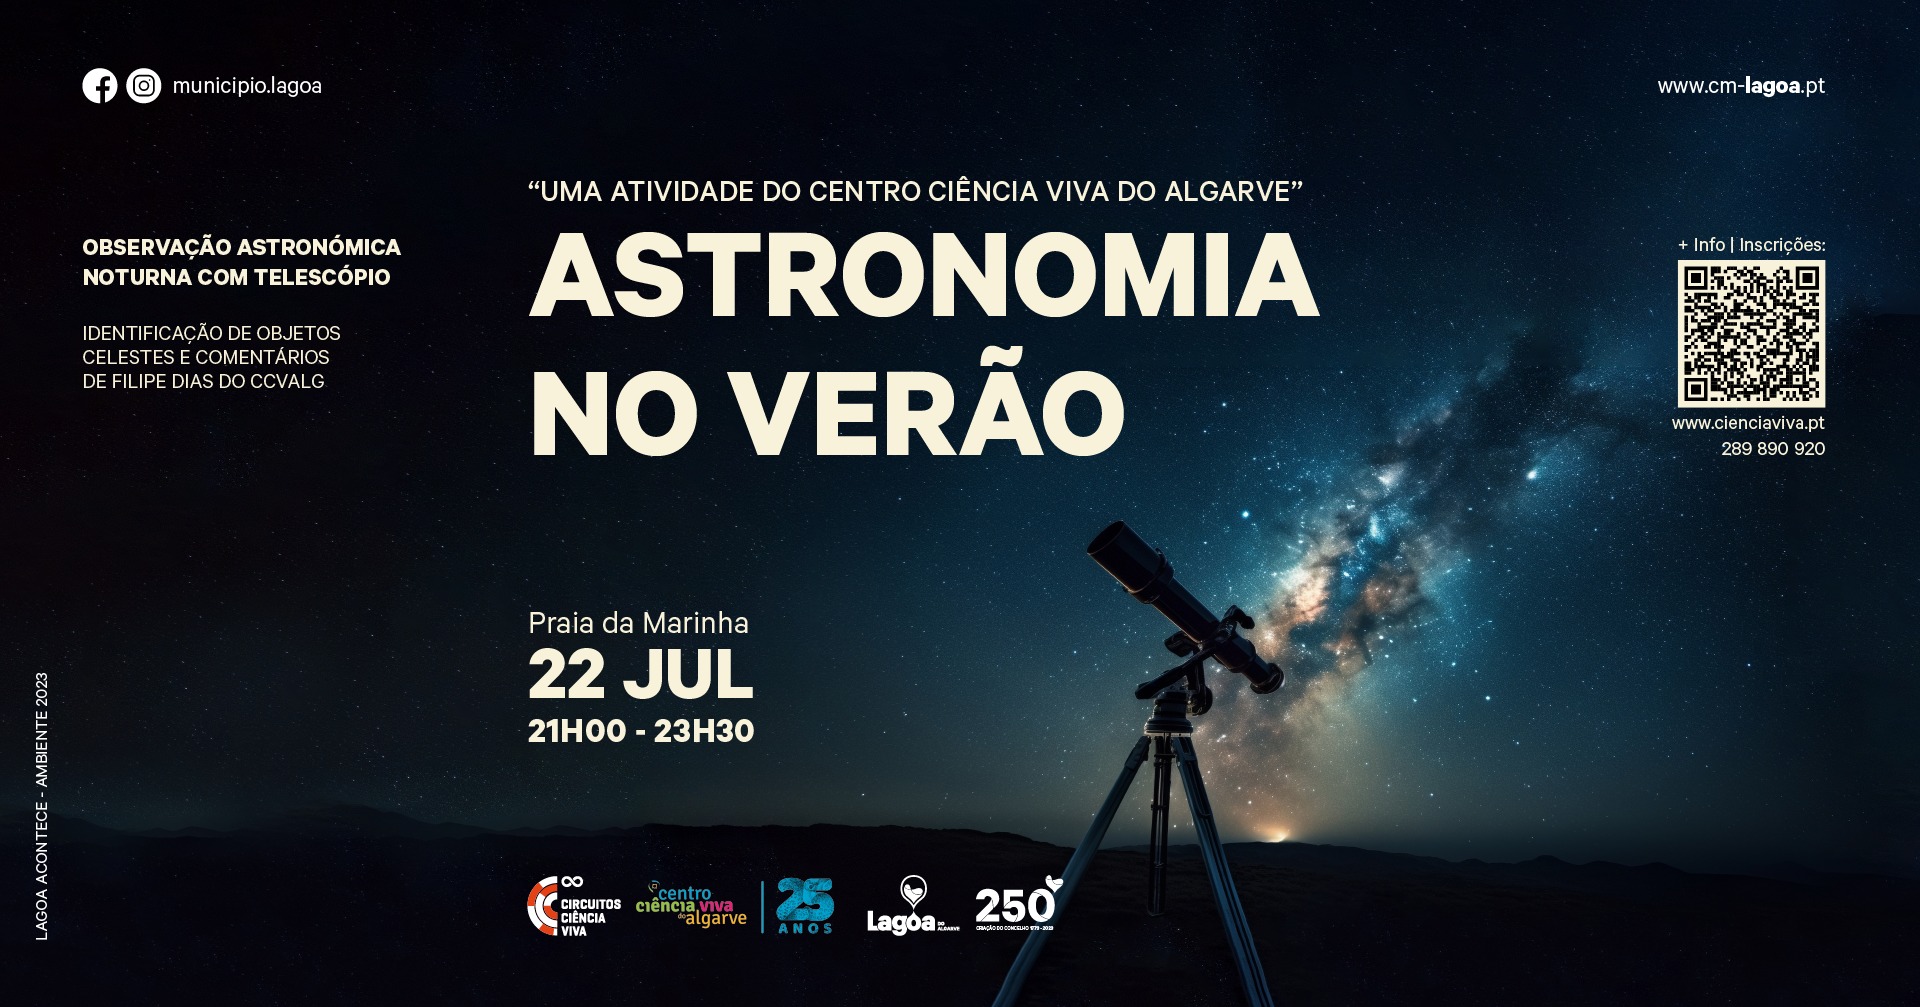  'Astronomia no Verão' | Centro de Ciência Viva do Algarve